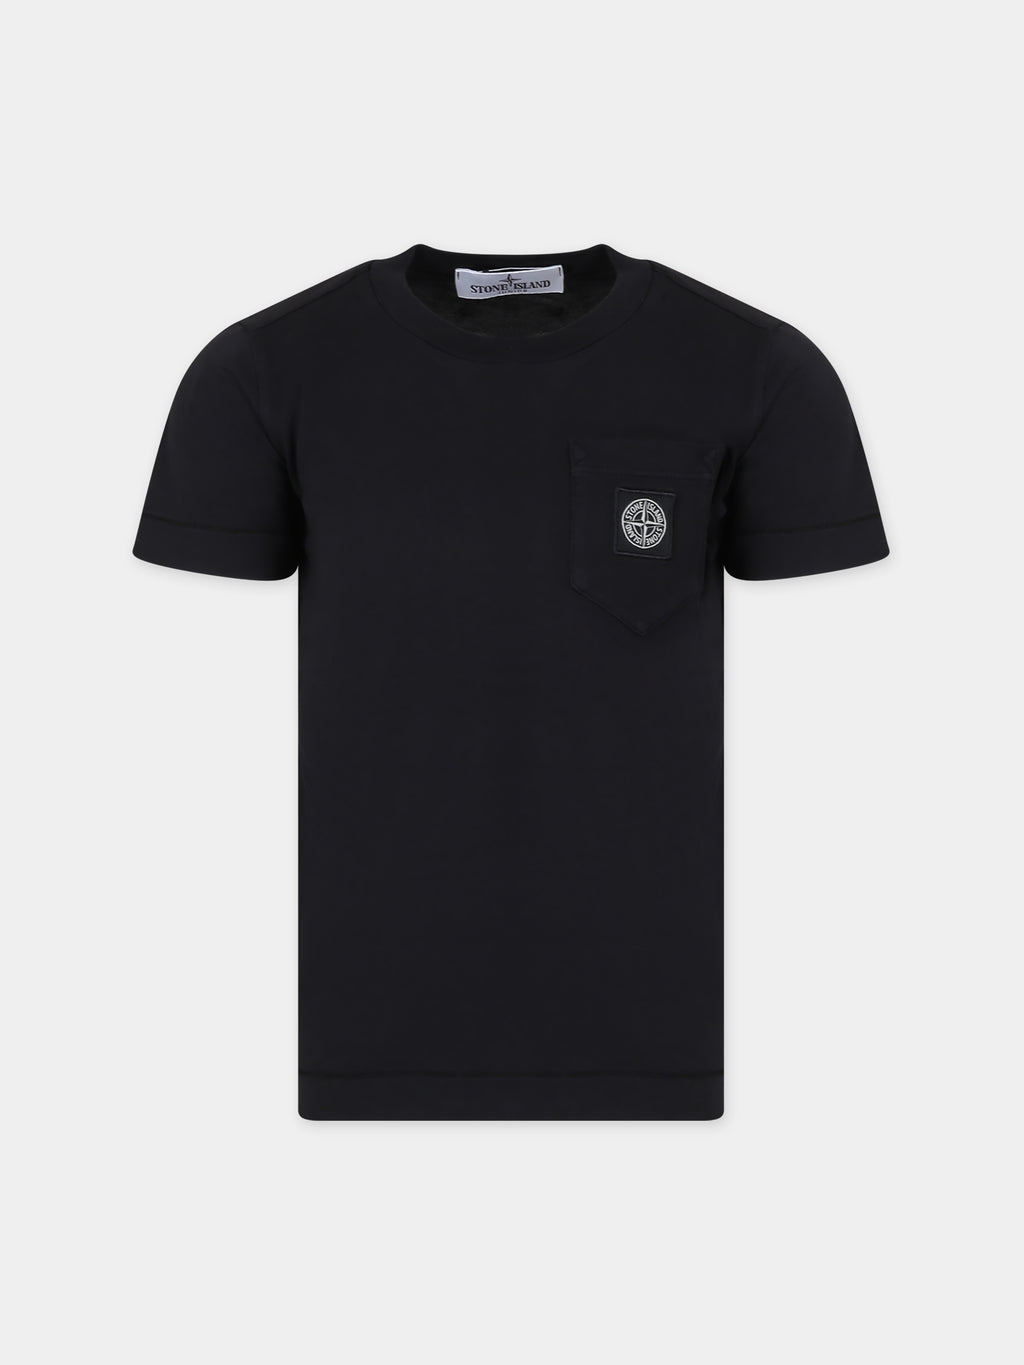 T-shirt noir pour garçon avec logo